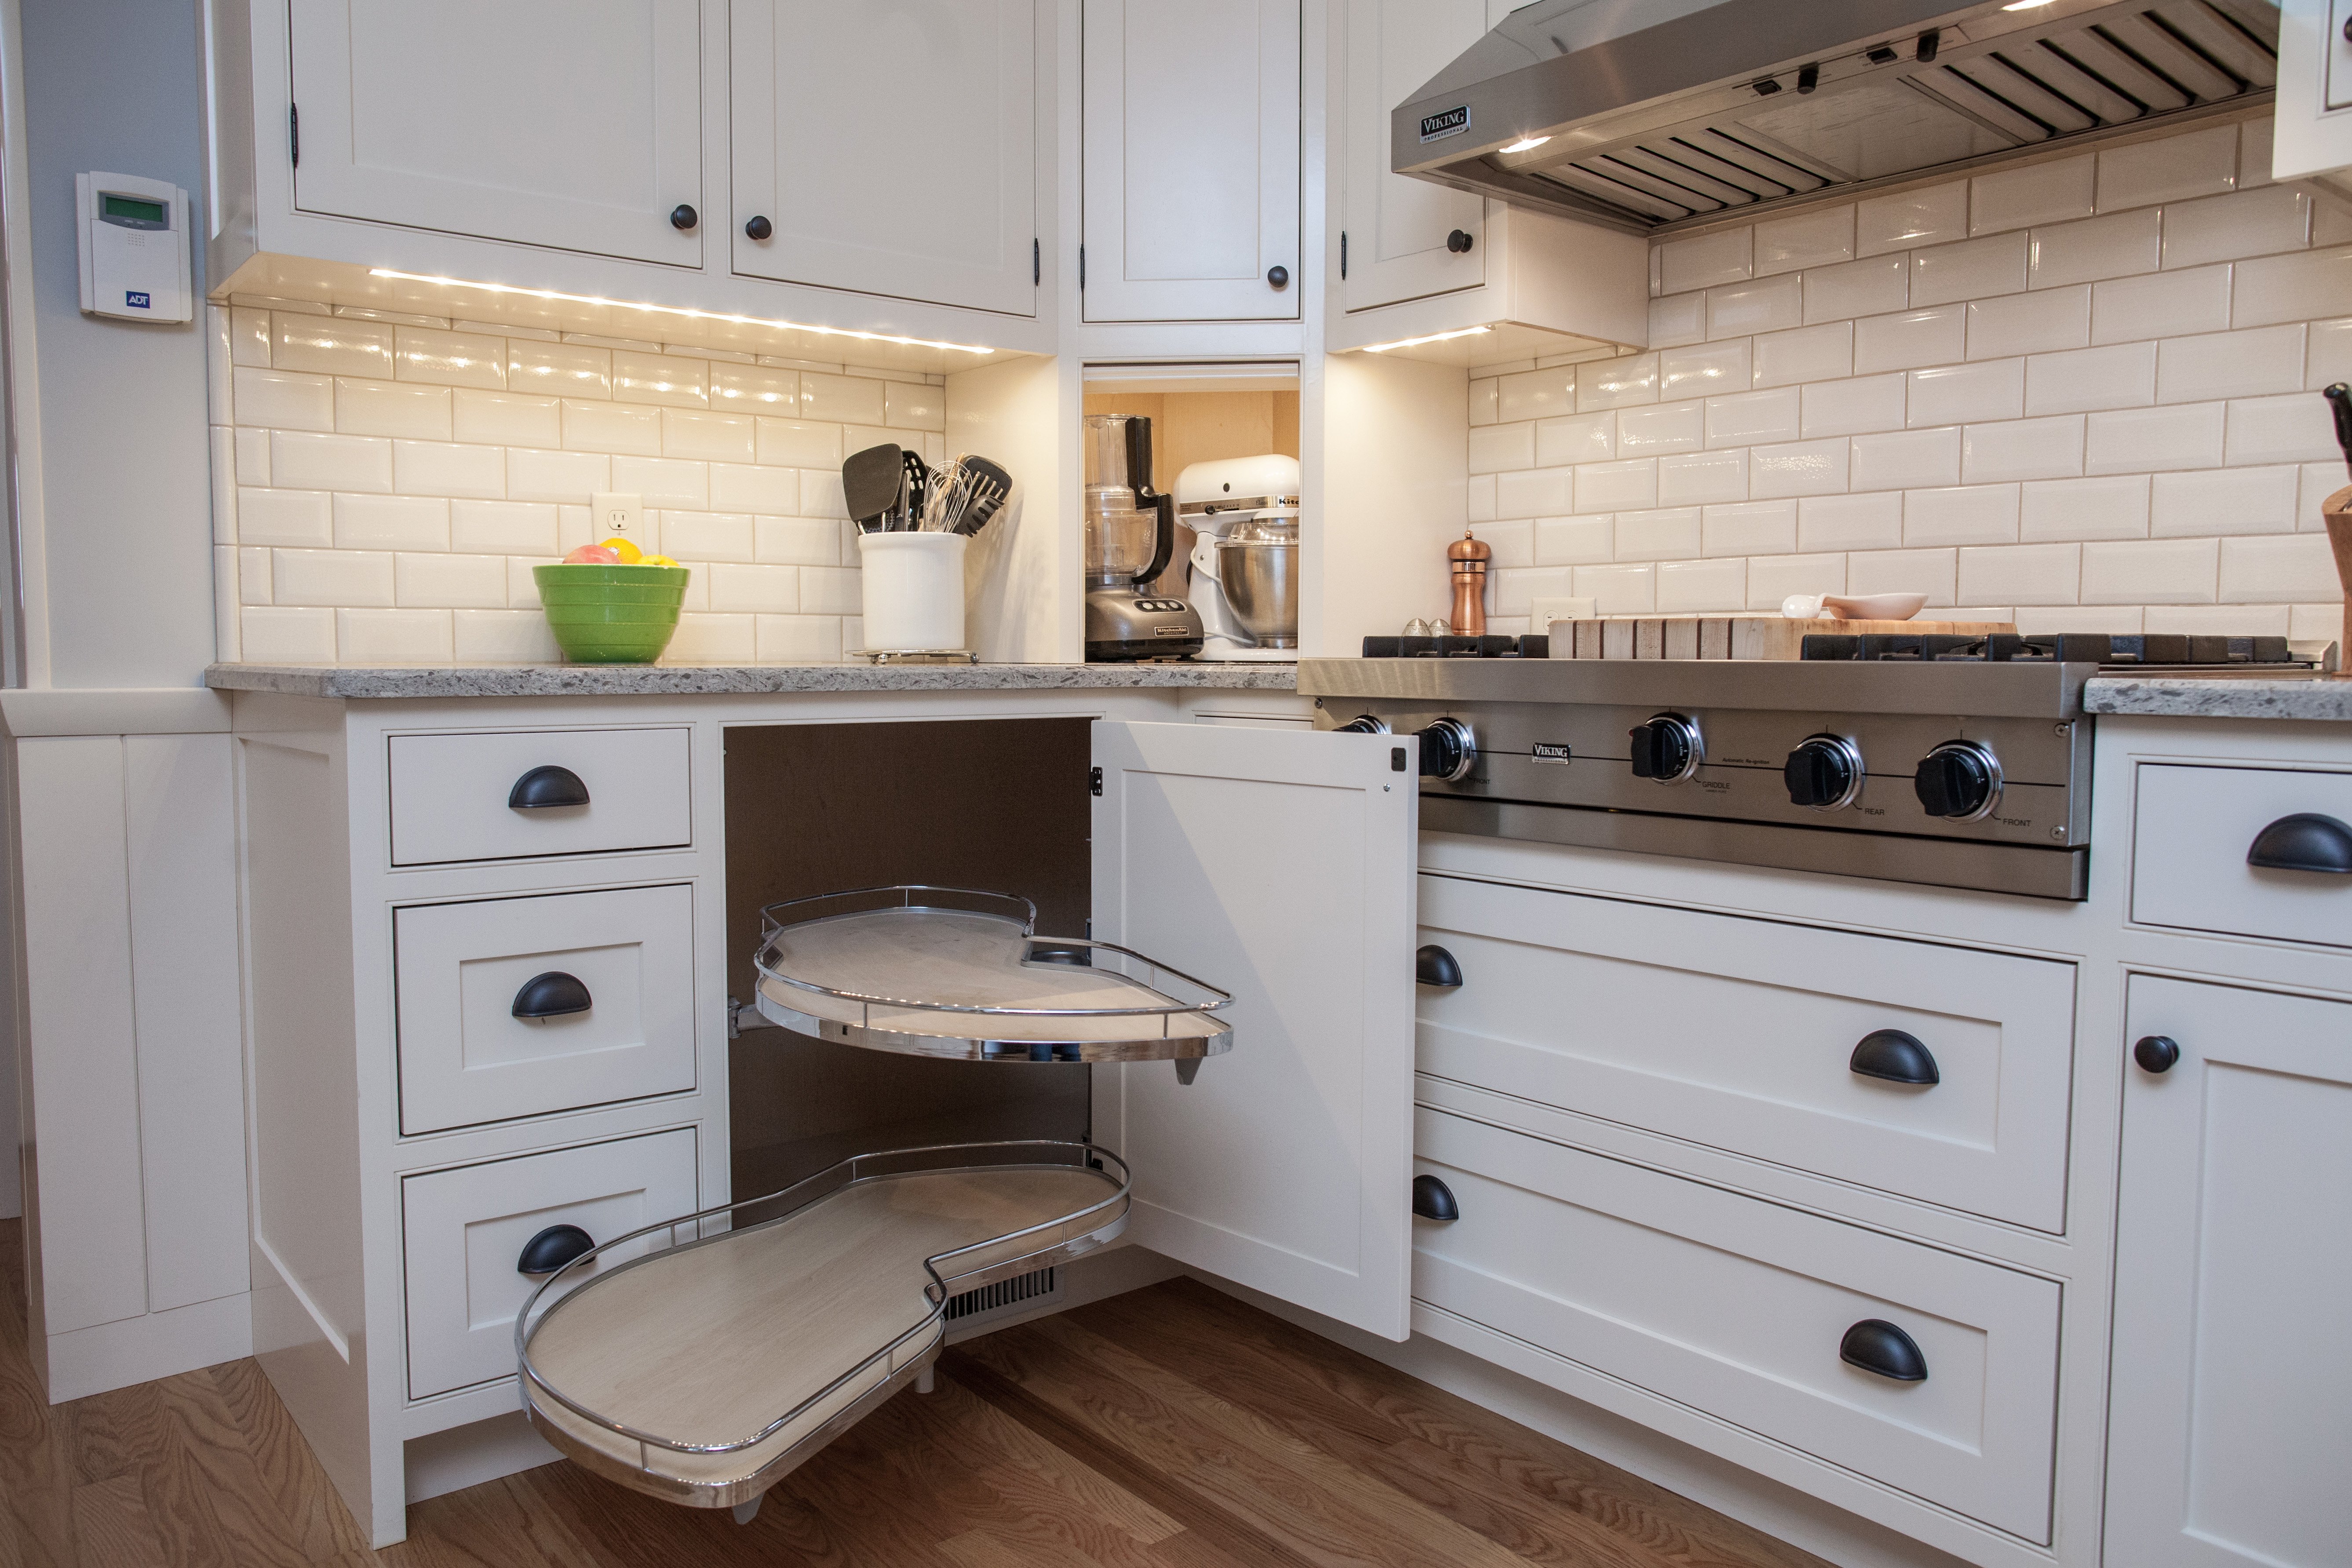 40+ Get Kitchen Appliance Garage Cabinet Images - Desain Interior Exterior
